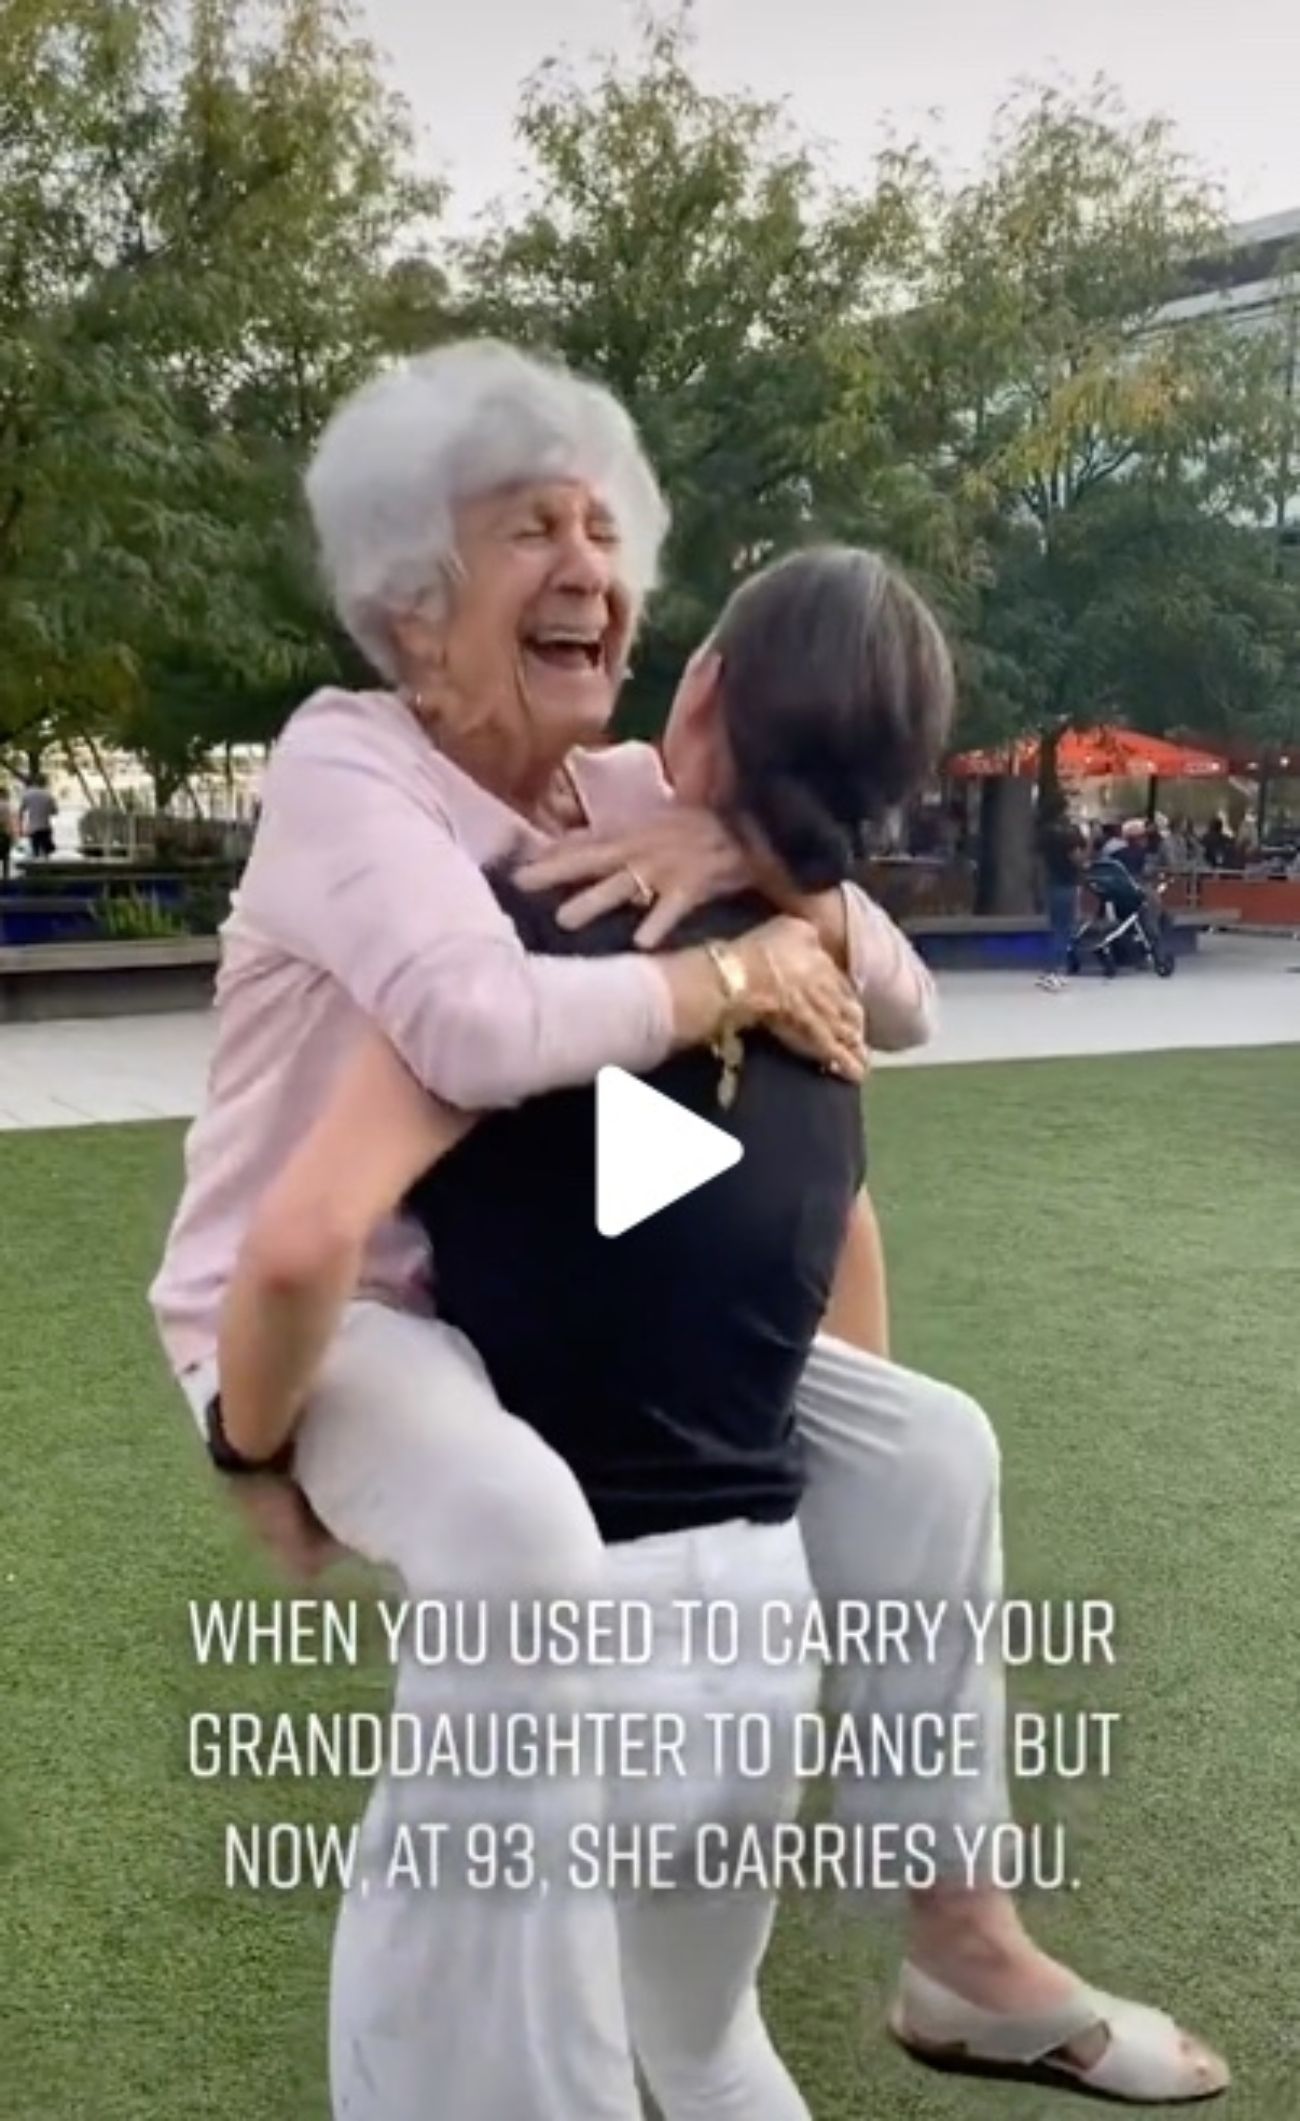 Una mujer de 93 años se hace viral con el antes y el después de cómo baila con su nieta